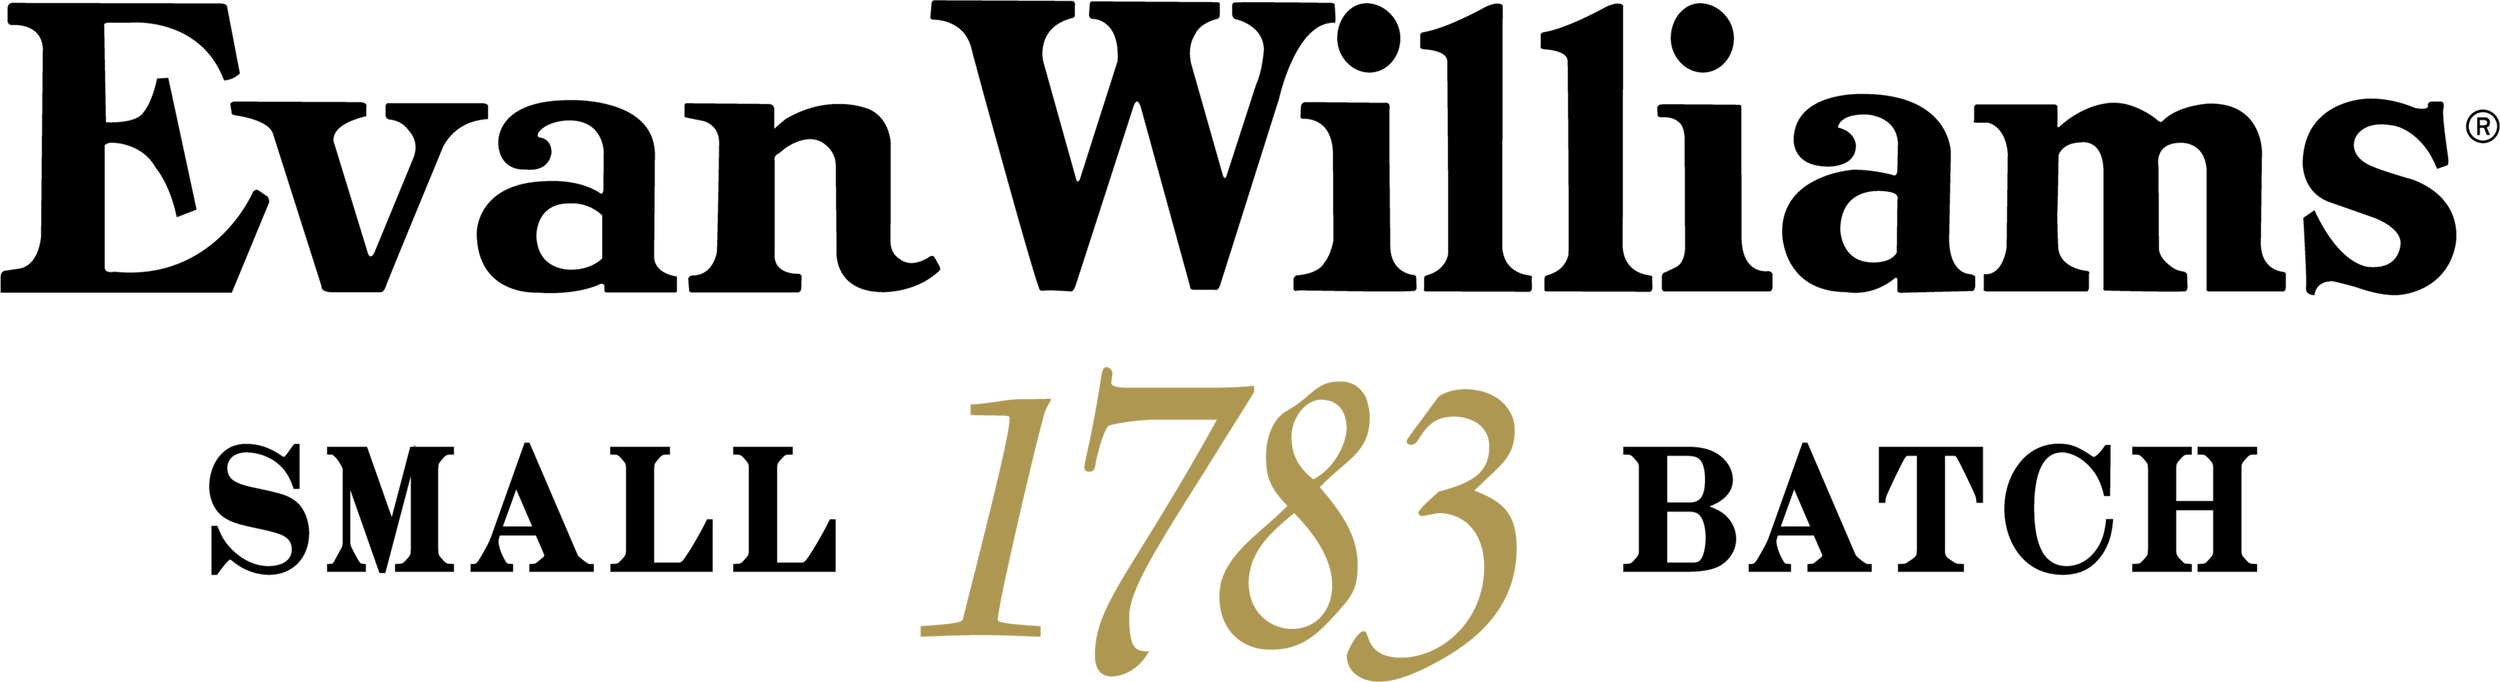 EW_1783_Logo_Horizontal.png